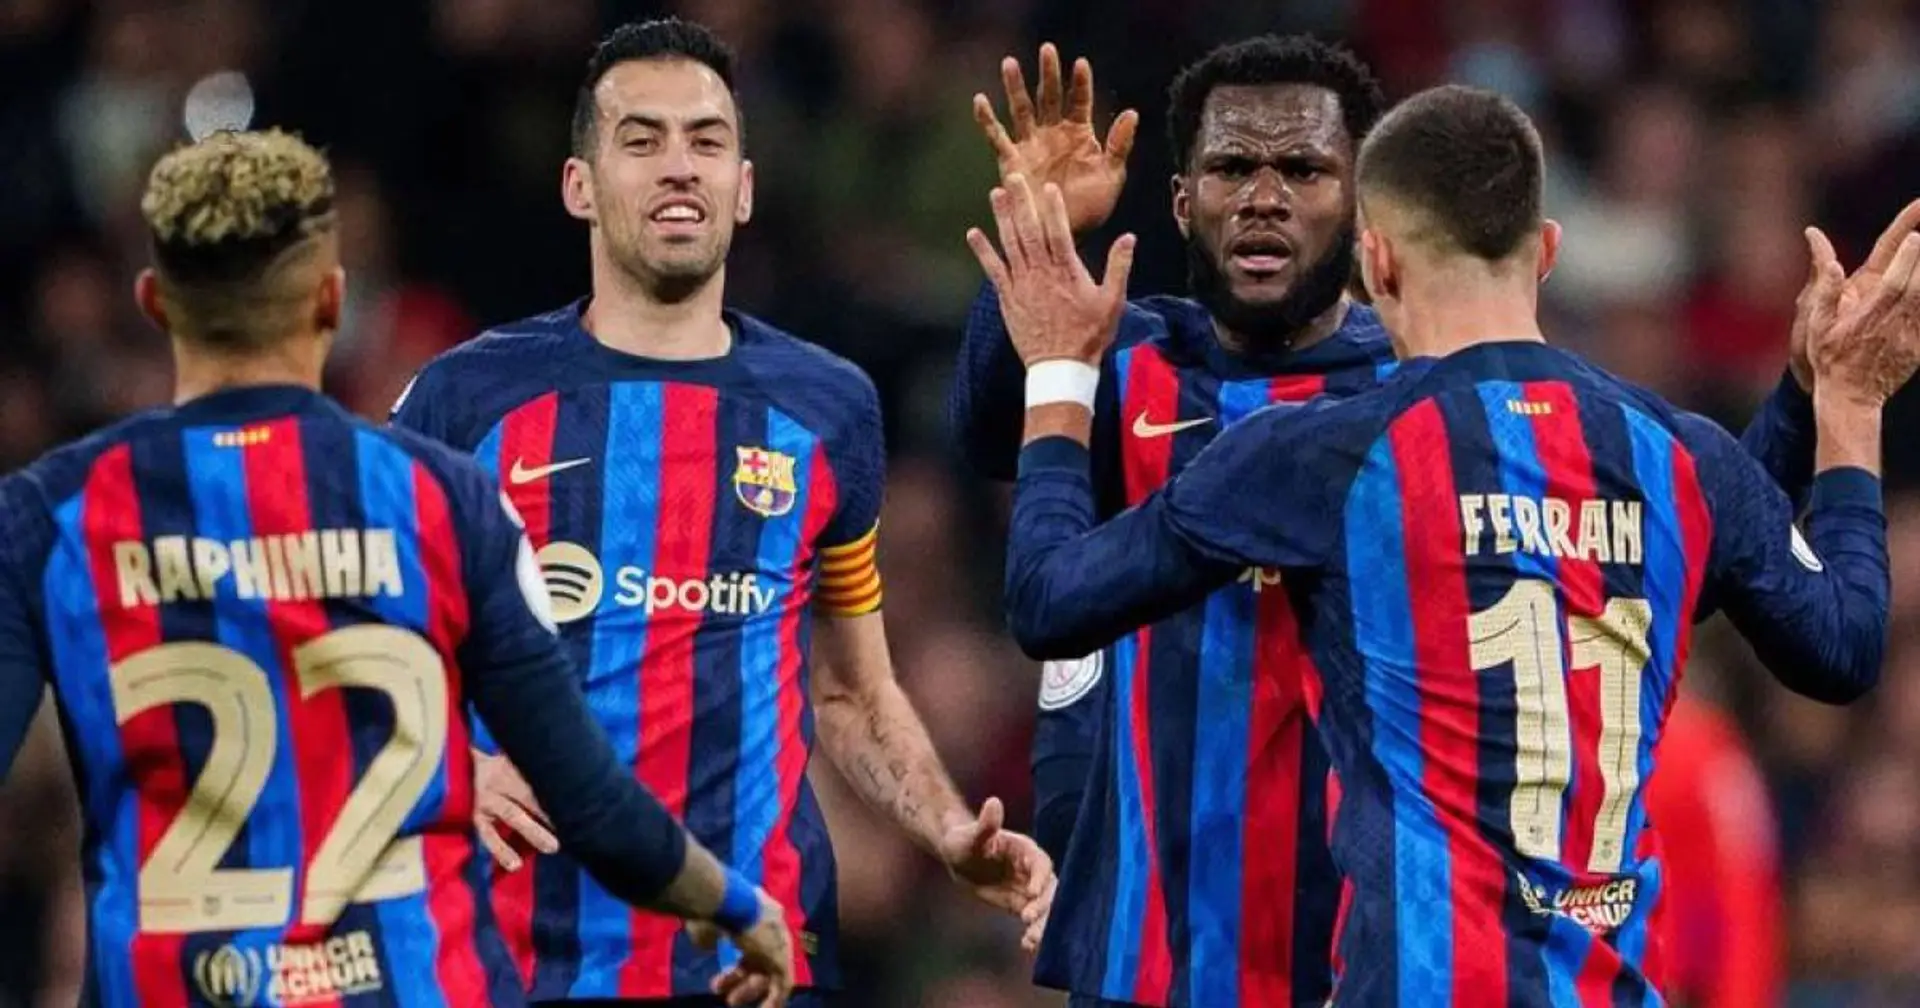 Raphinha 9, Koundé 3: Notes des joueurs du Barça après la victoire contre Valence